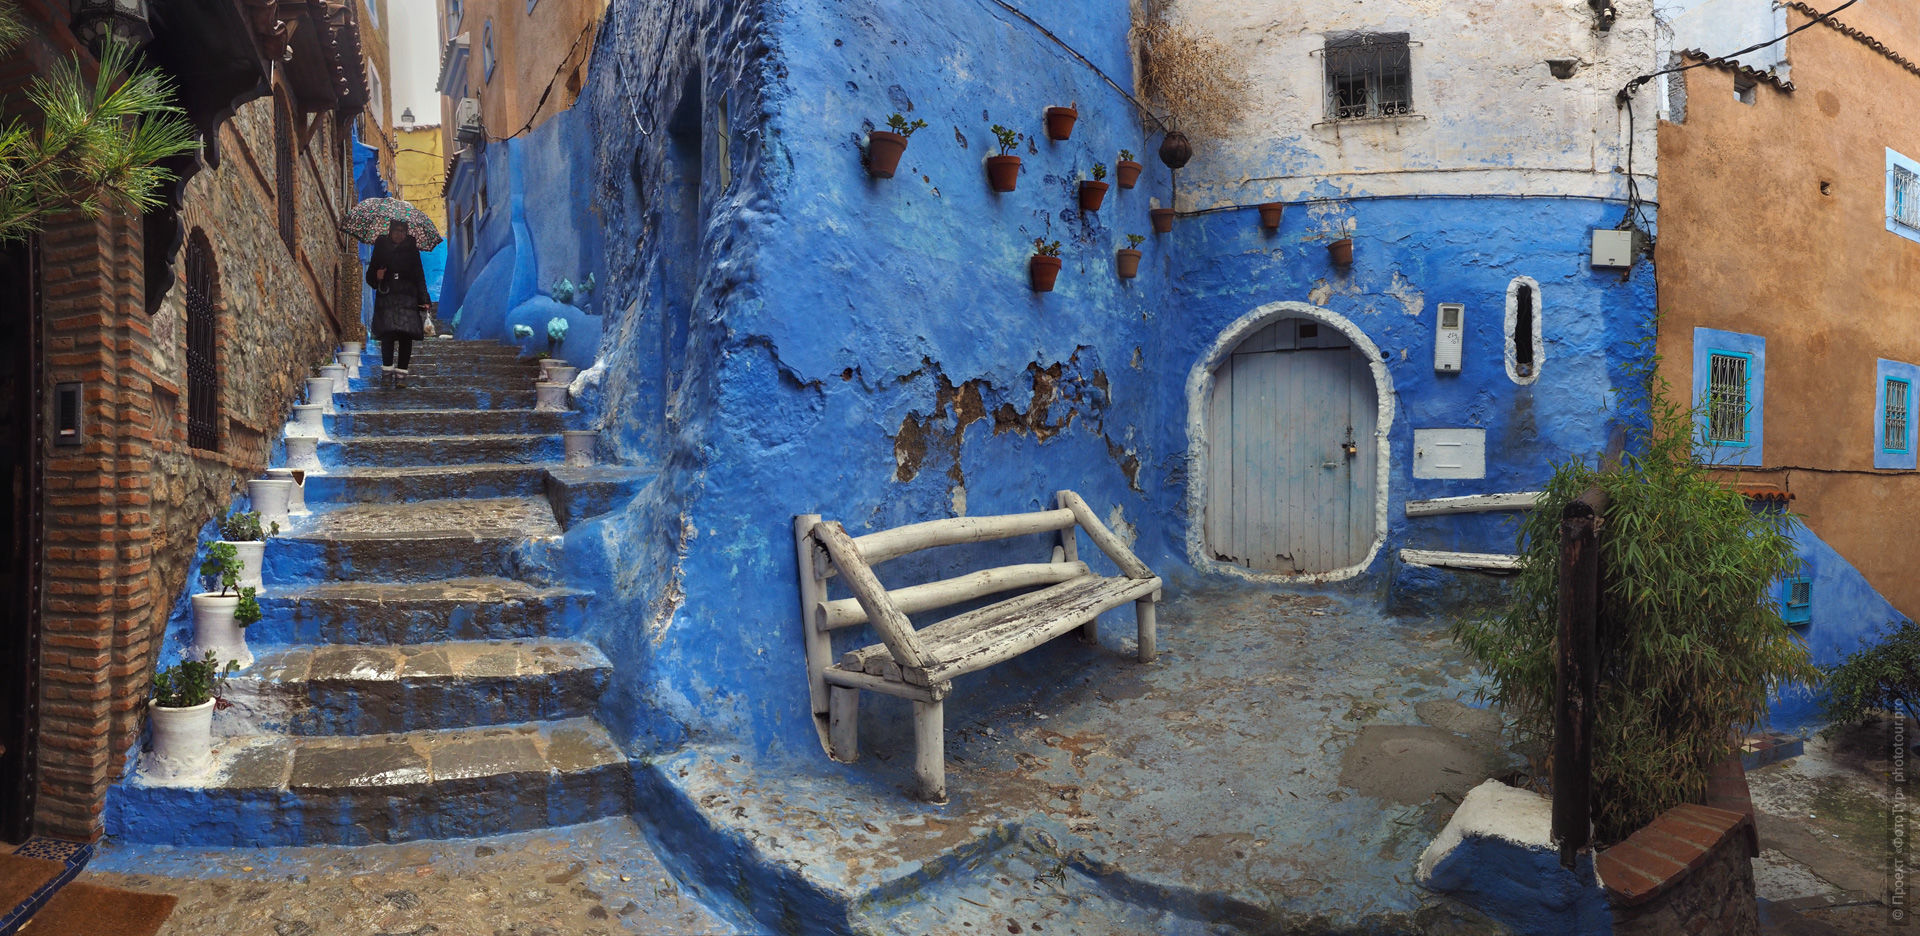 Белая скамейка в синей медине Шефшауэна. Фототур в Марокко: медины и порты Марокко, 7 ноября - 18 ноября 2021 года.